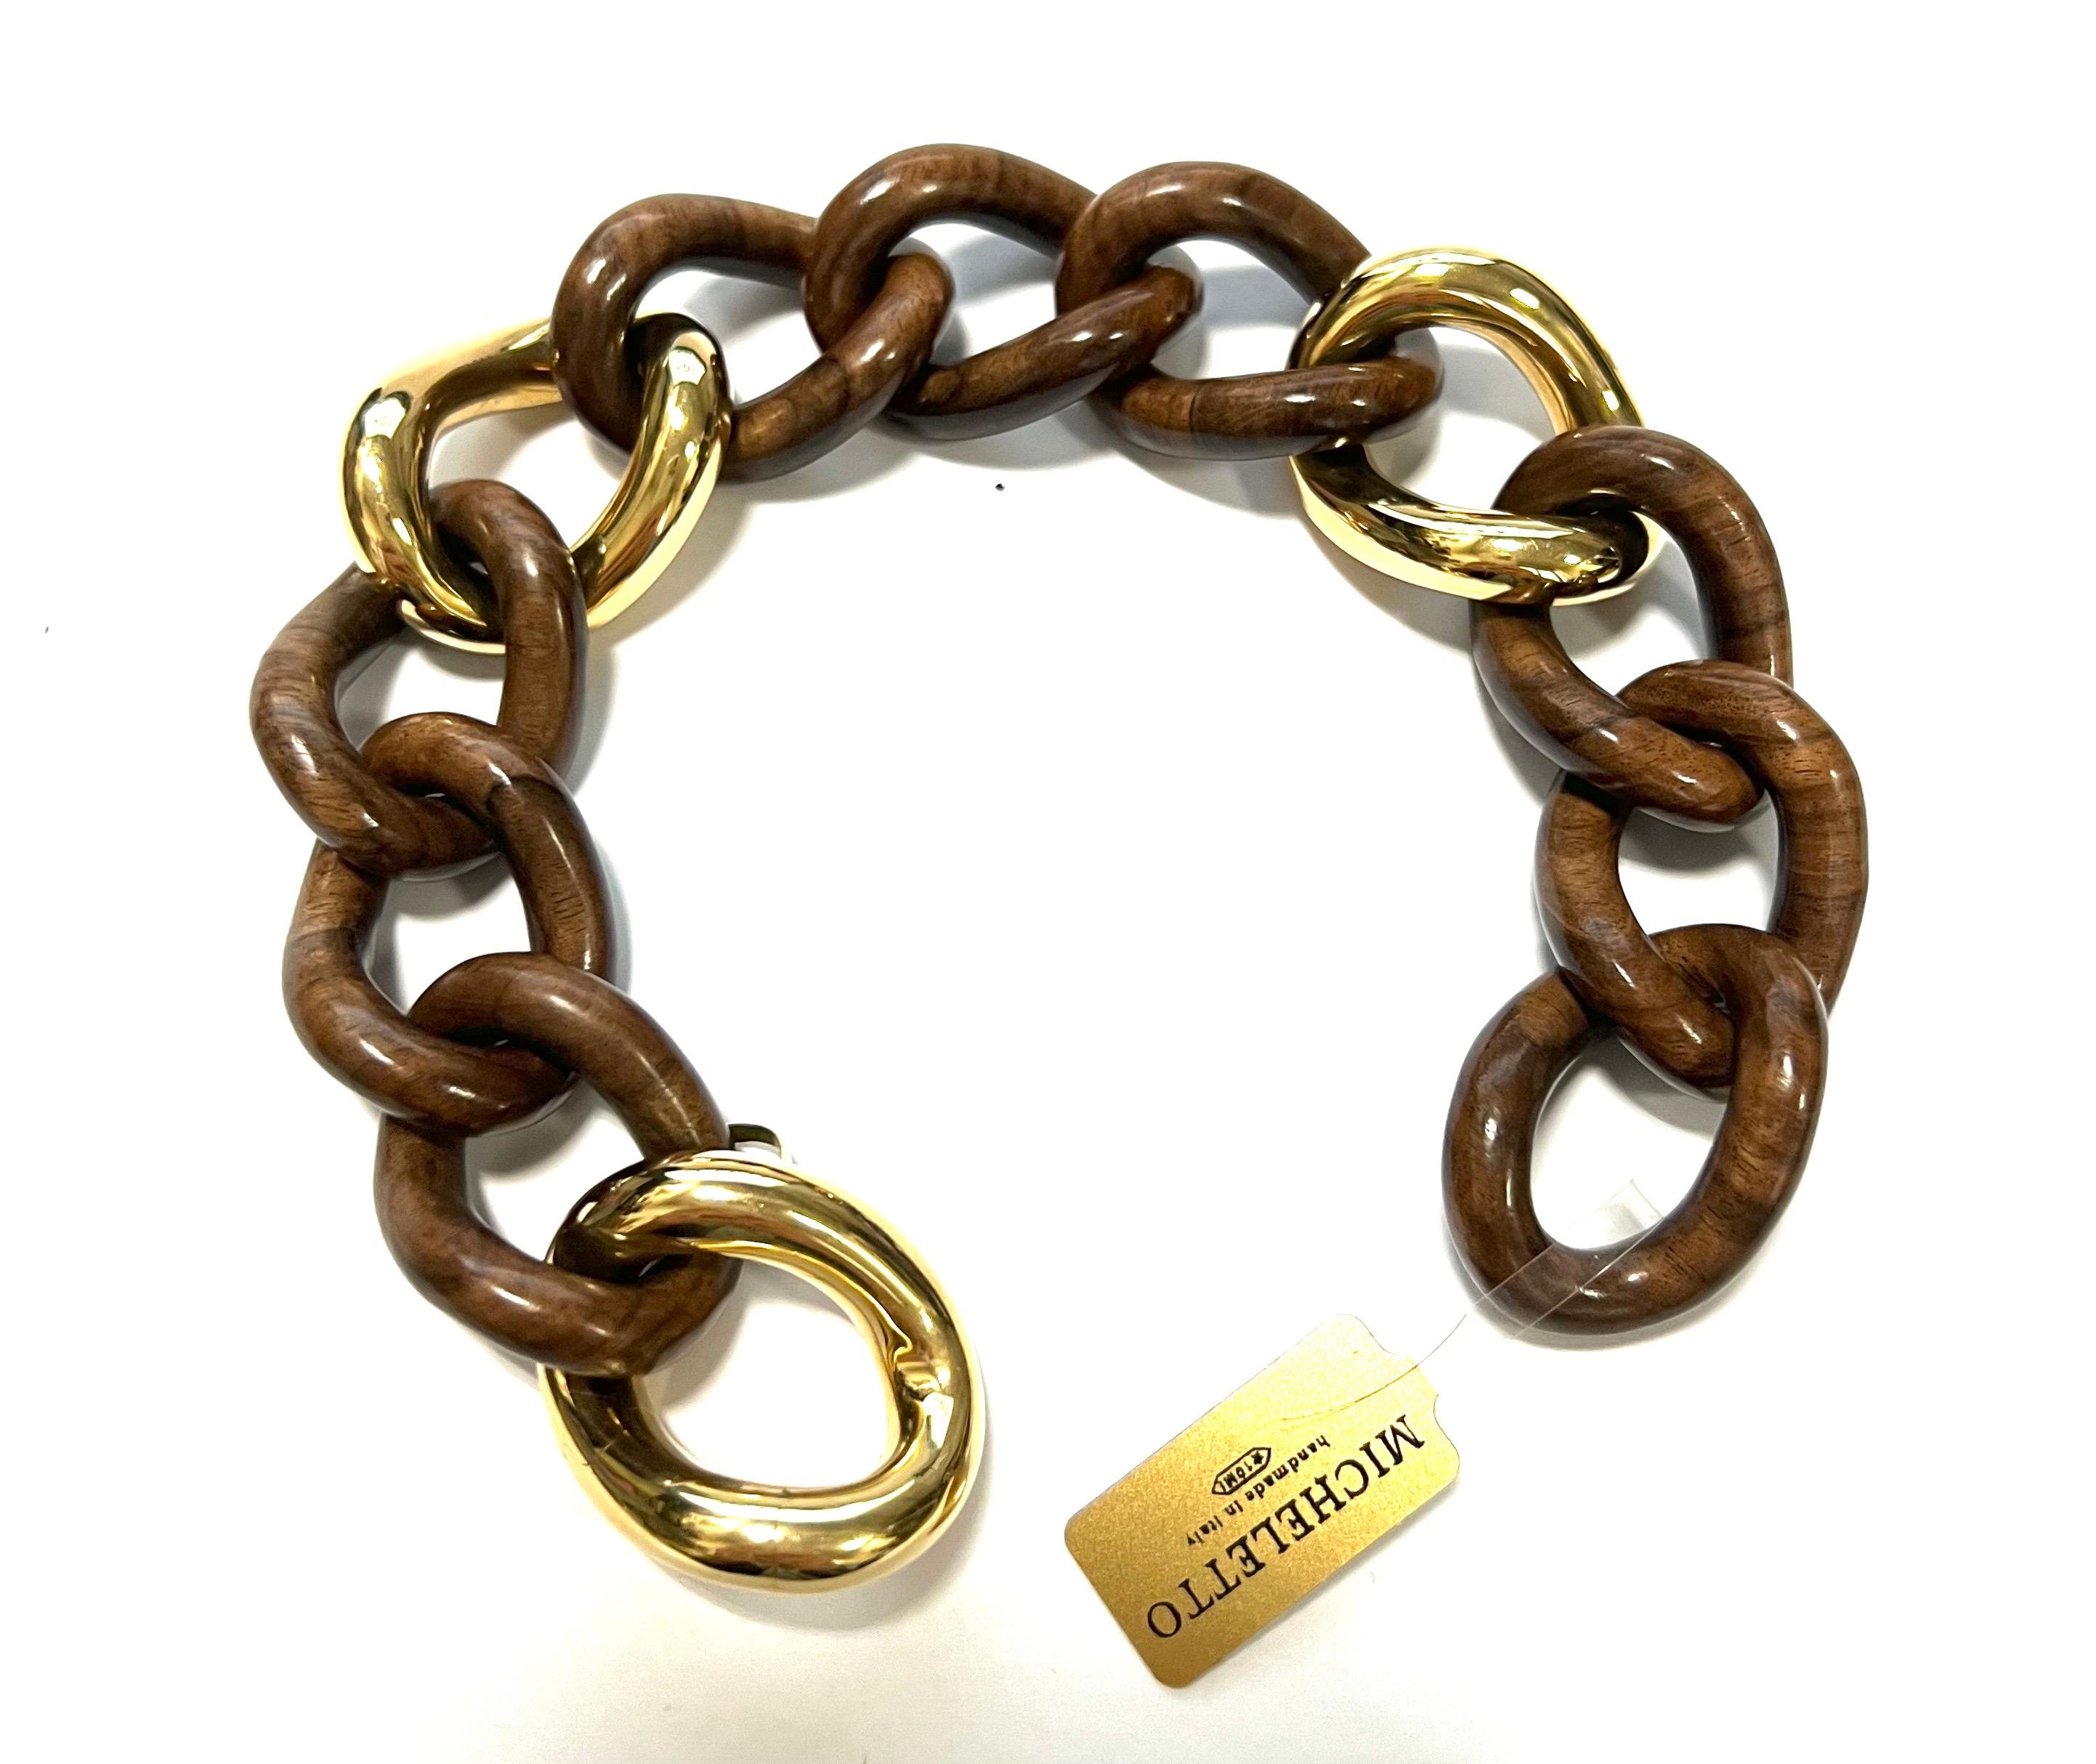 bracelet à maillons en or jaune 18 carats et macédoine de palissandre
Ce bracelet a une ouverture cachée.
Poids total gr. 37,6
Poids d'or gr. 21,7
Longueur cm. 20
Timbre 750, 10 MI, ITALIE

Ce bracelet peut être associé au 4659-Z 15/B (collier)